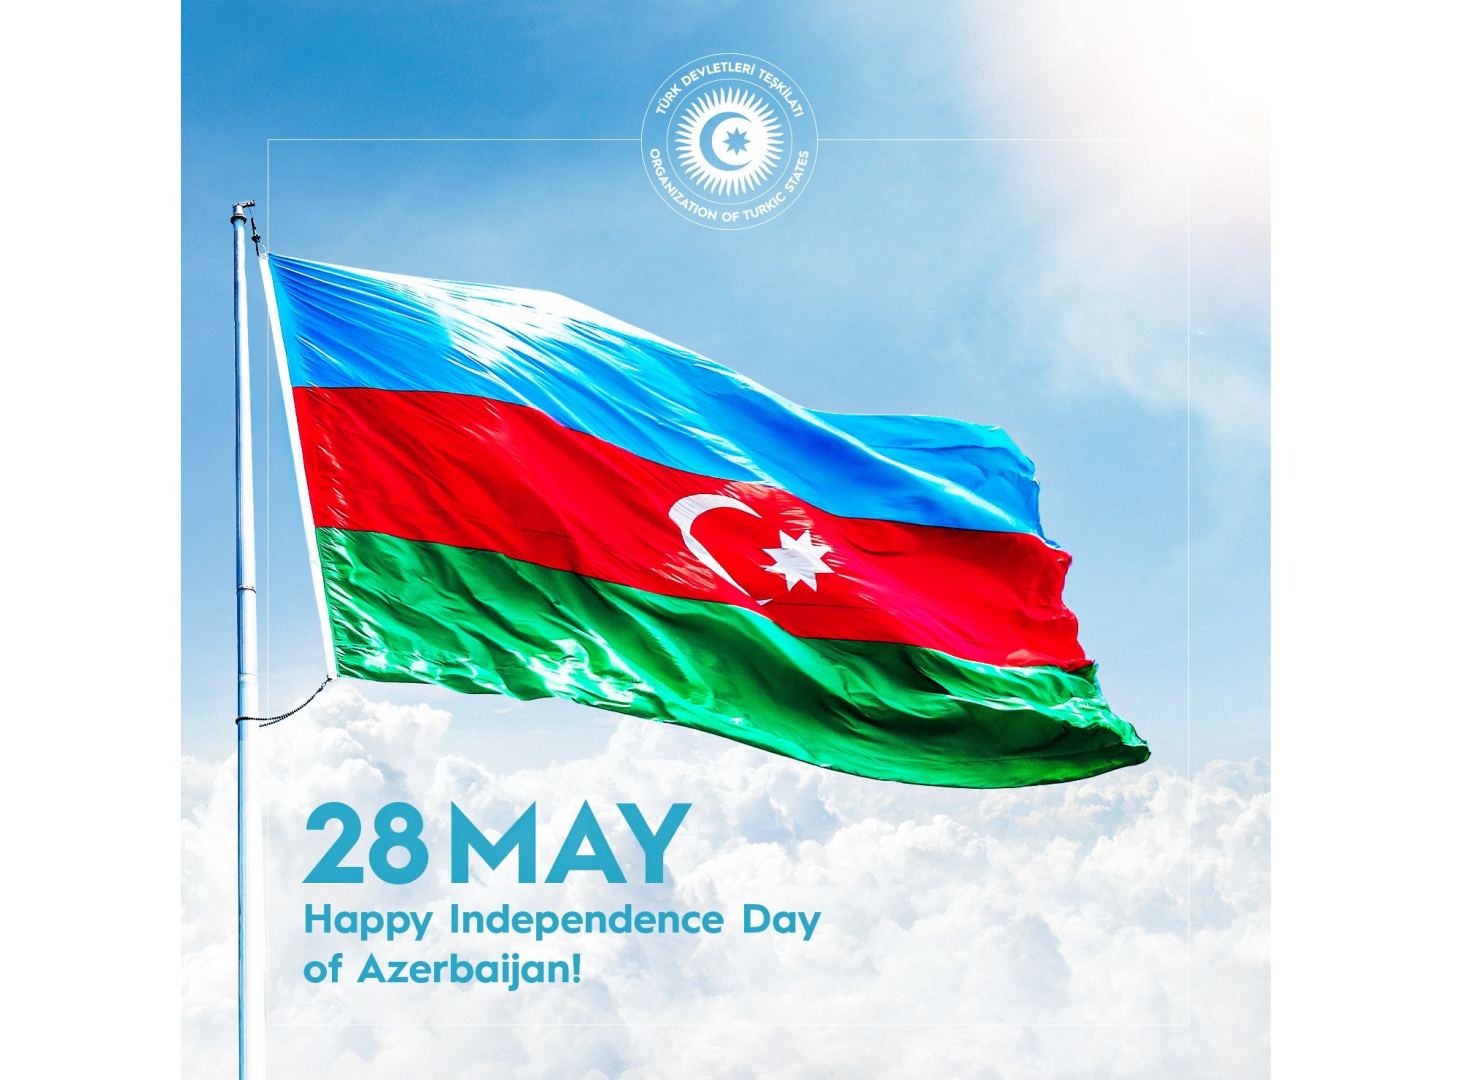 Победа Азербайджана во второй Карабахской войне открыла новую страницу в истории тюркского мира - Багдад Амреев